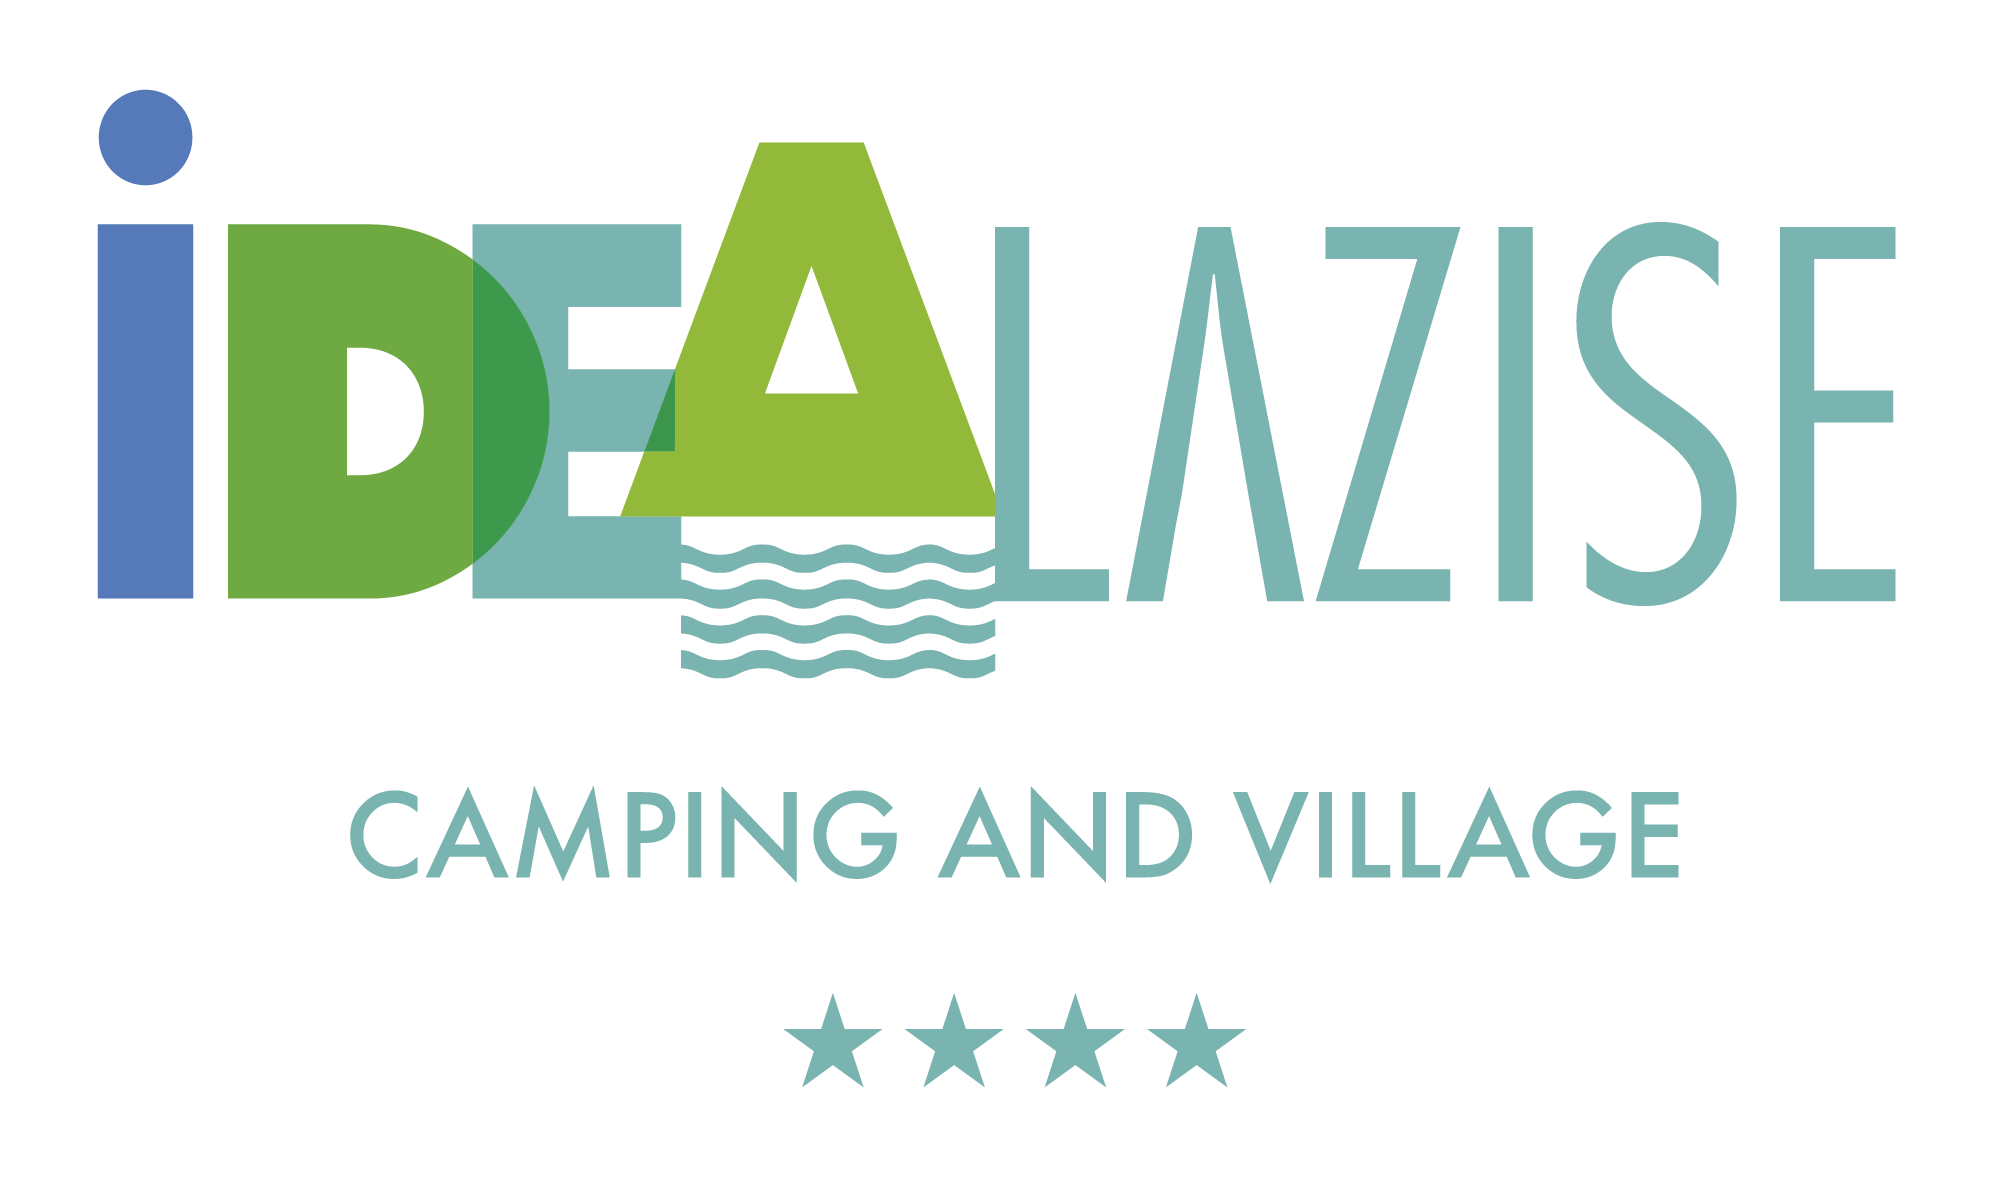 Logo IdeaLazise